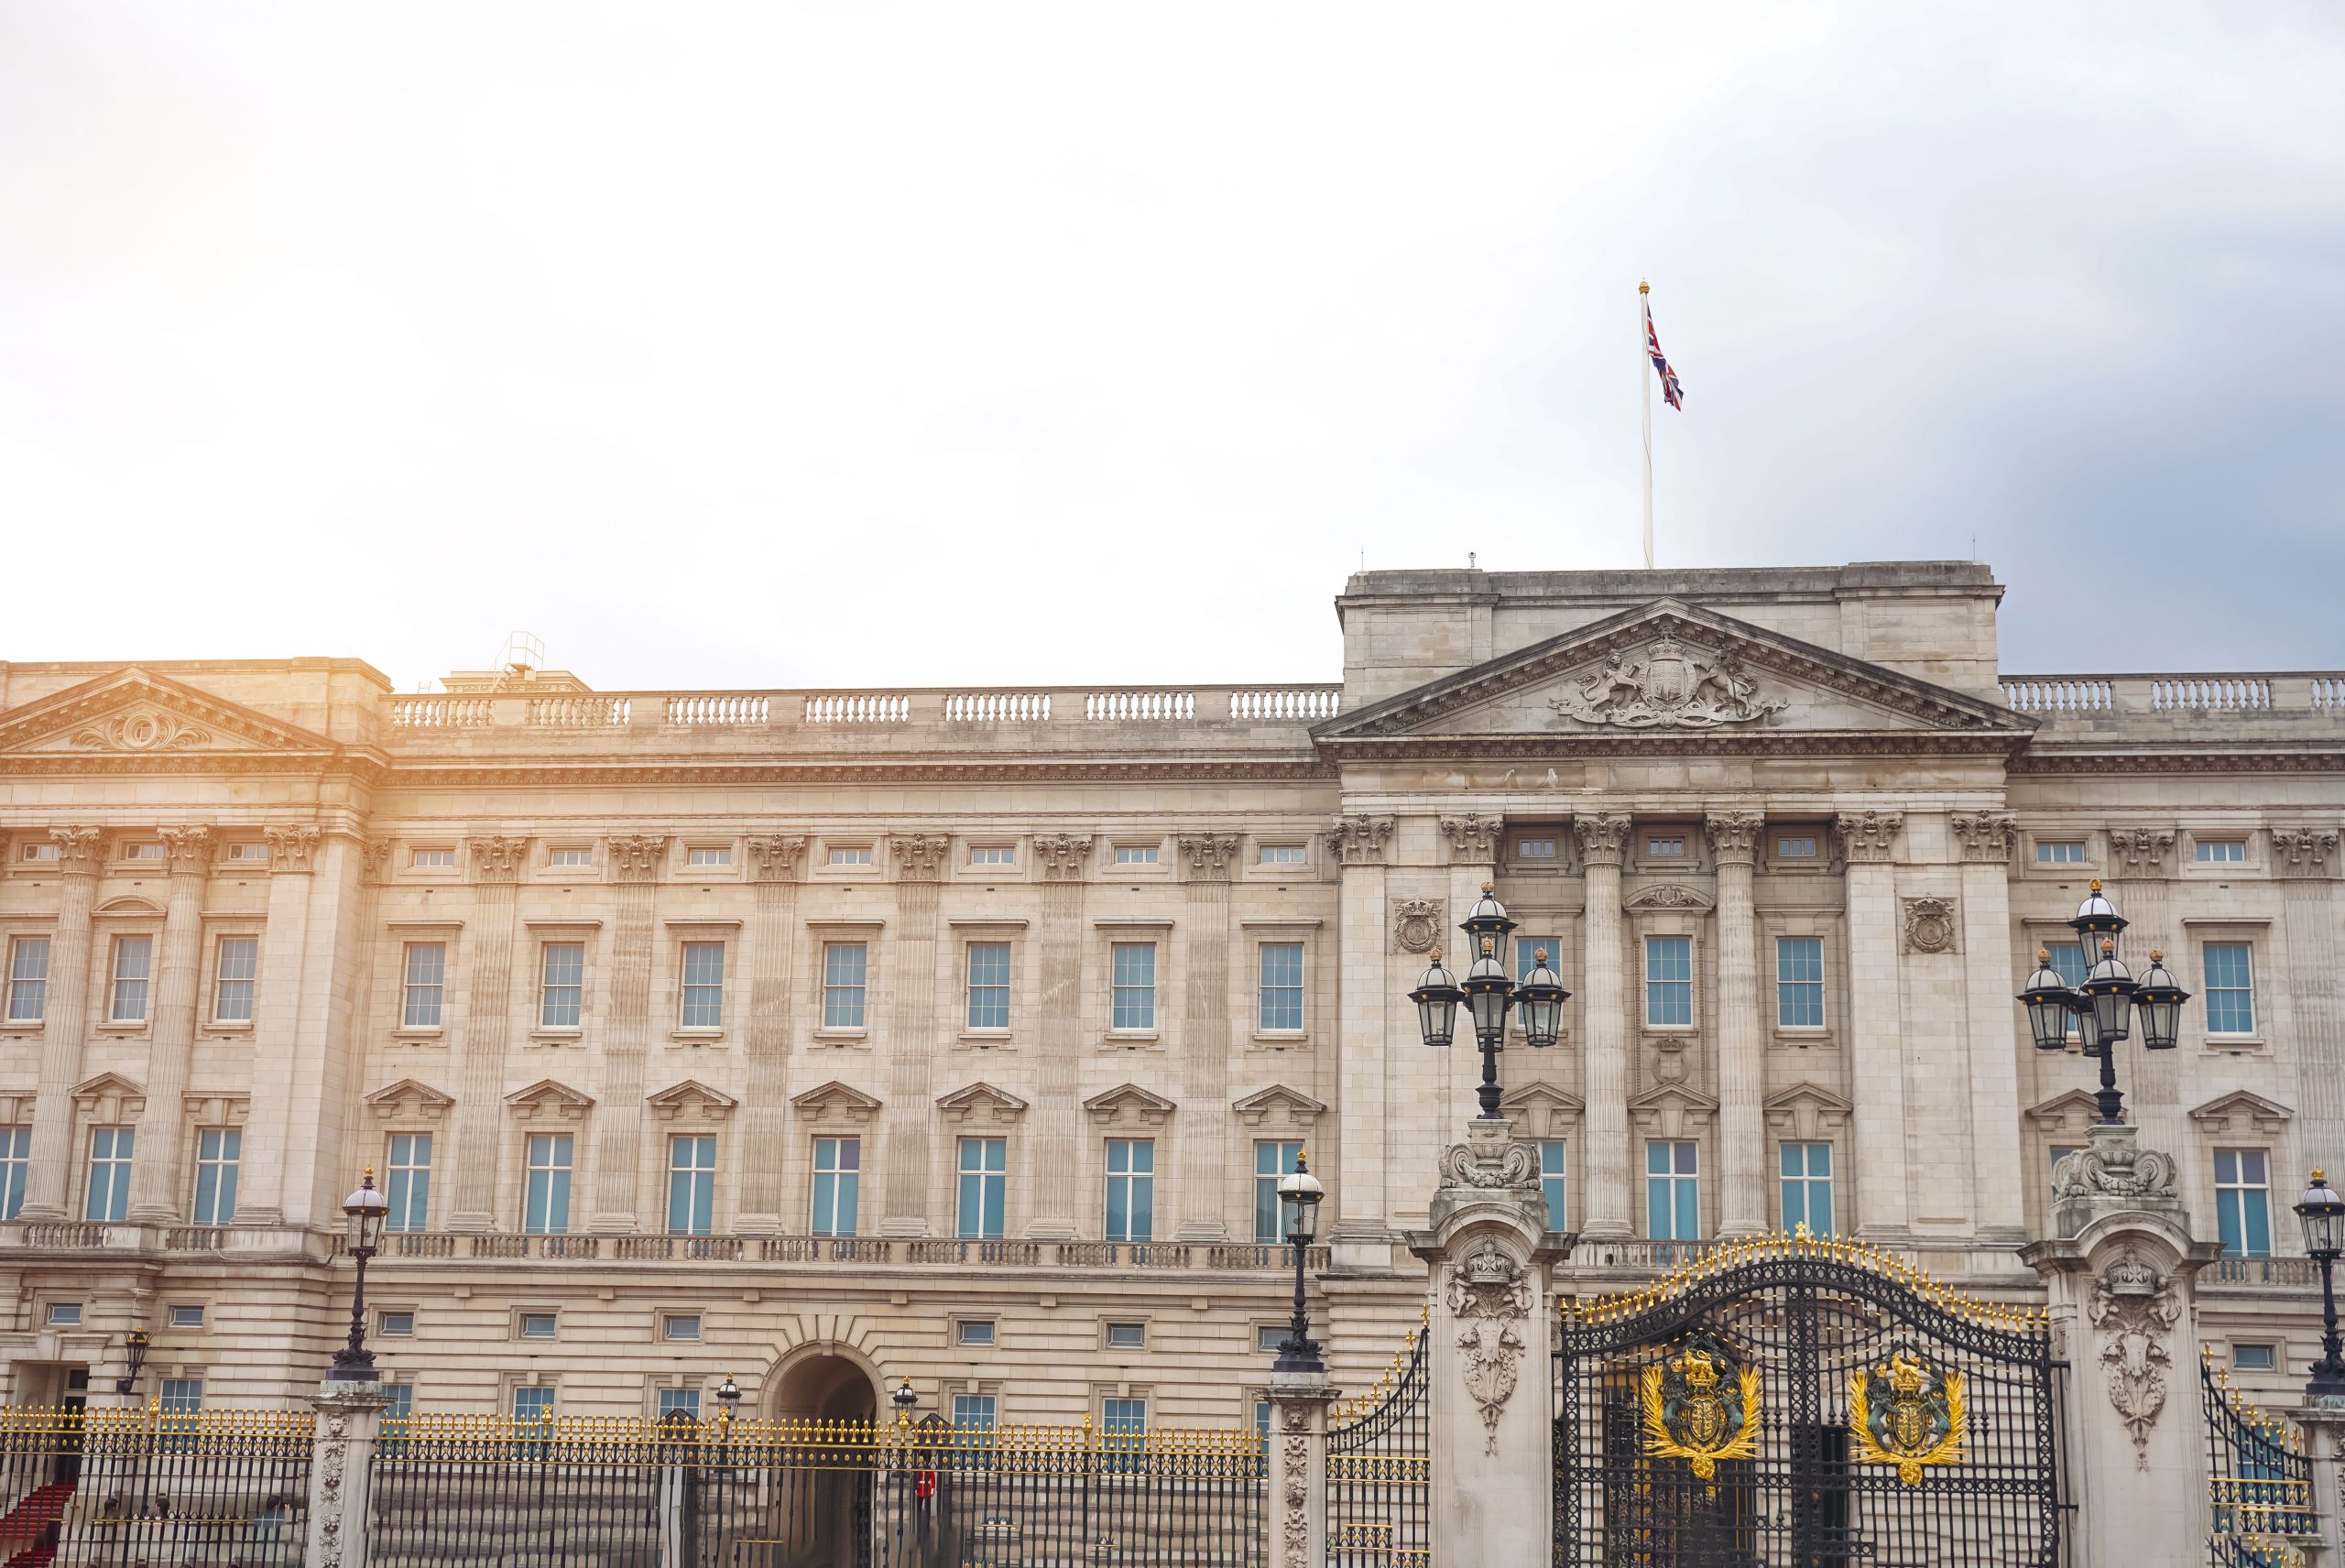 5. Buckingham palace